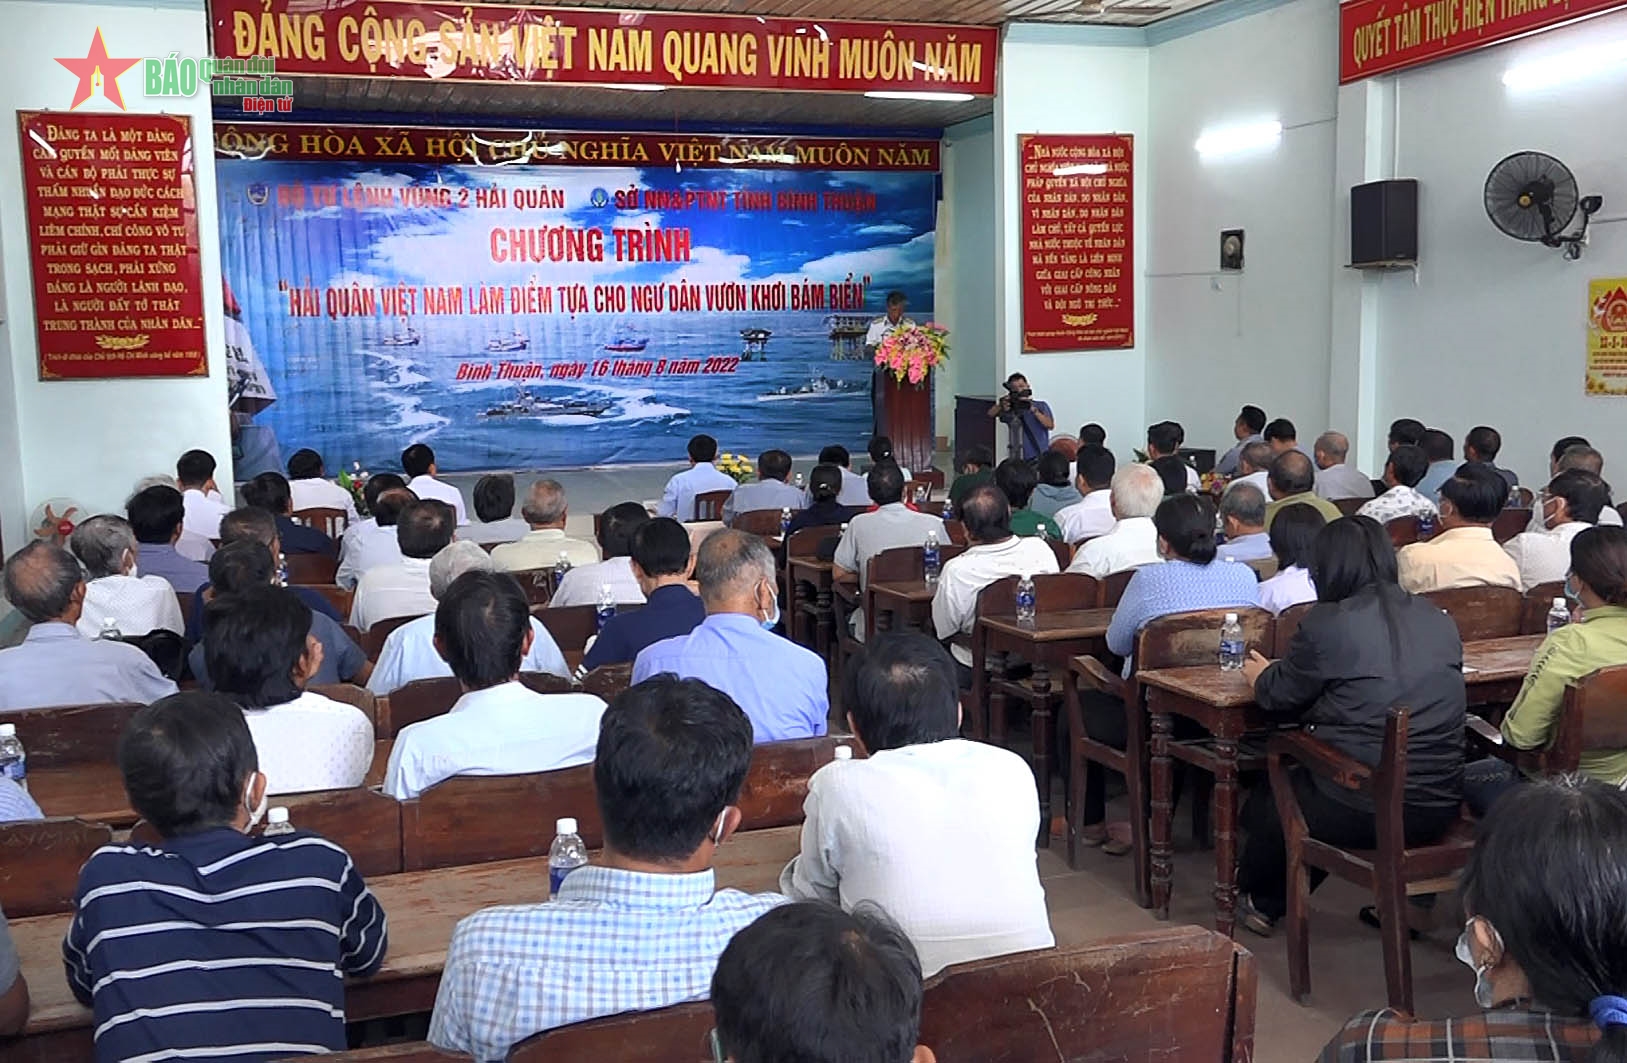 Vùng 2 Hải quân đồng hành, hỗ trợ ngư dân Bình Thuận vươn khơi bám biển